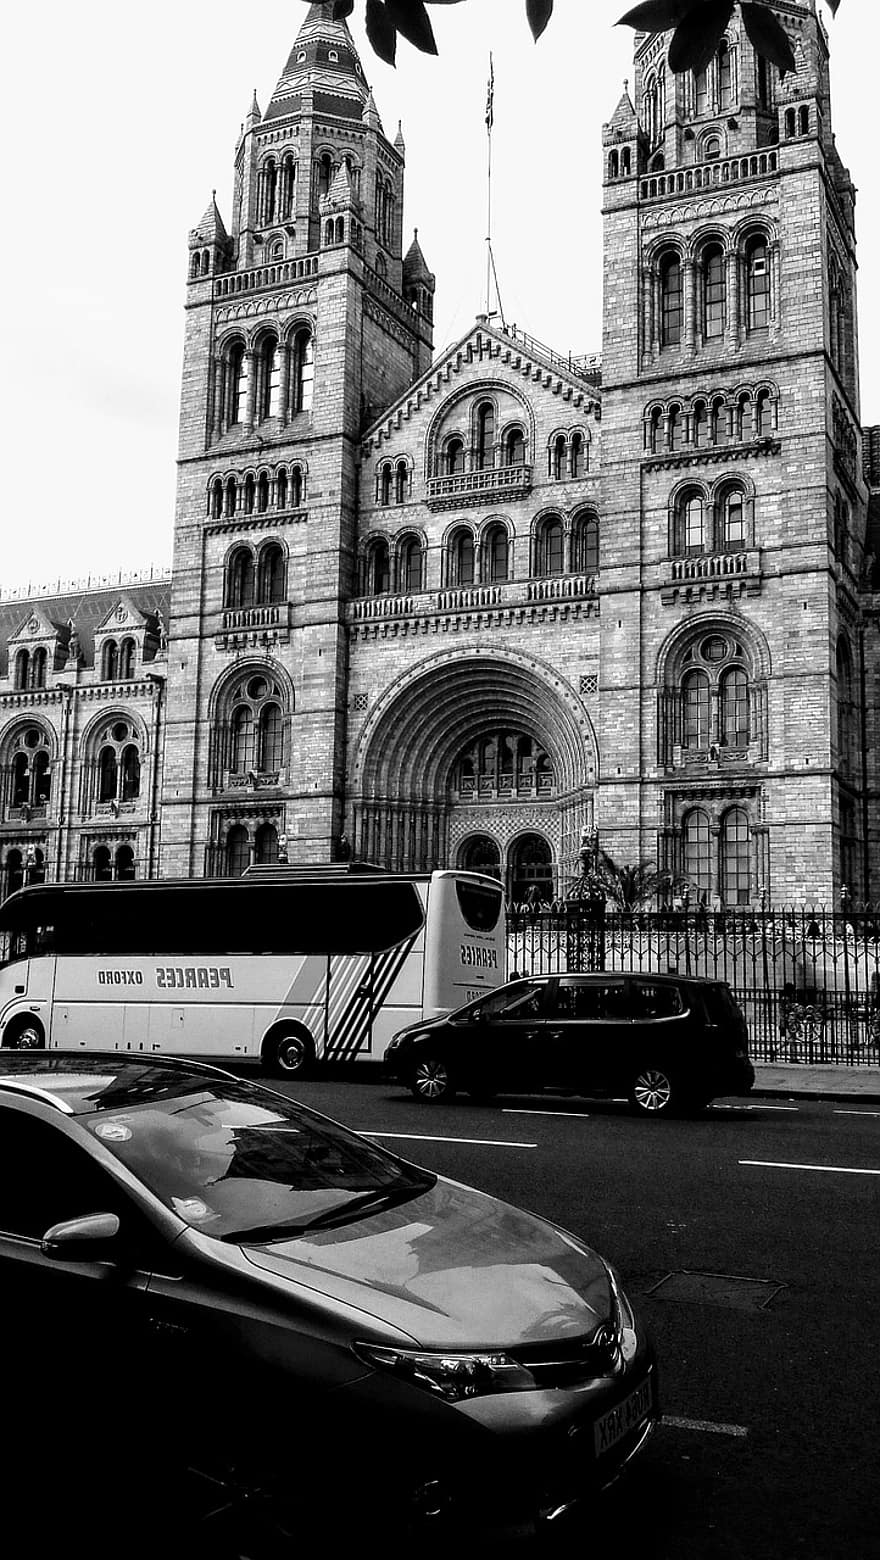 متحف التاريخ الطبيعي ، لندن ، هندسة معمارية ، معلم معروف ، متحف ، العمارة القوطية ، سيارة ، حافلة ، اسود و ابيض ، حركة المرور ، وسيلة تنقل